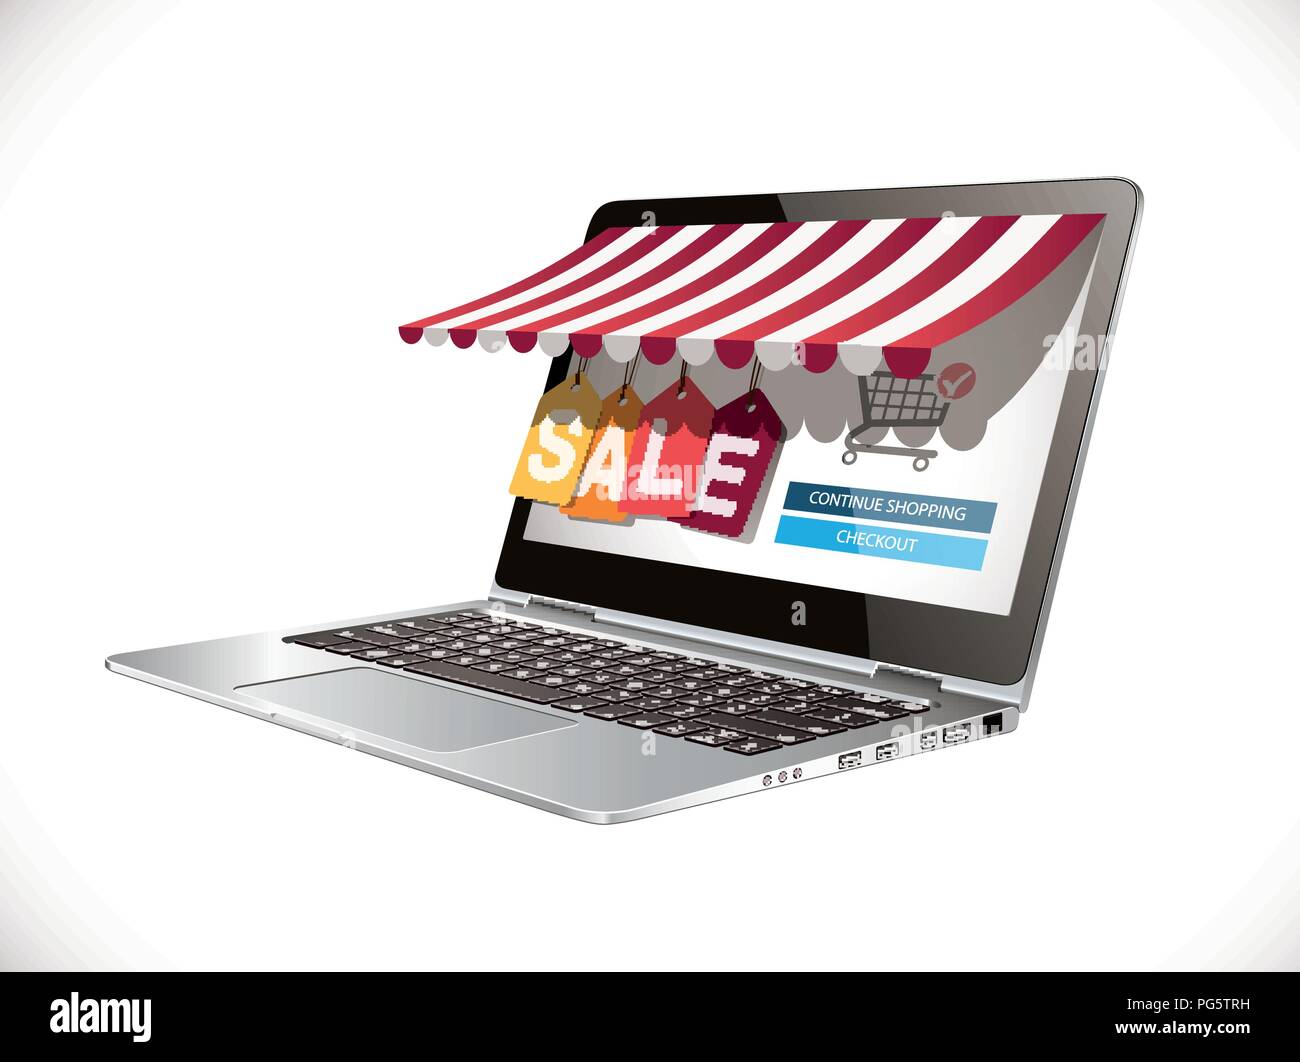 Laptop come marketplace - computer e-commerece concetto - grande vendita Illustrazione Vettoriale